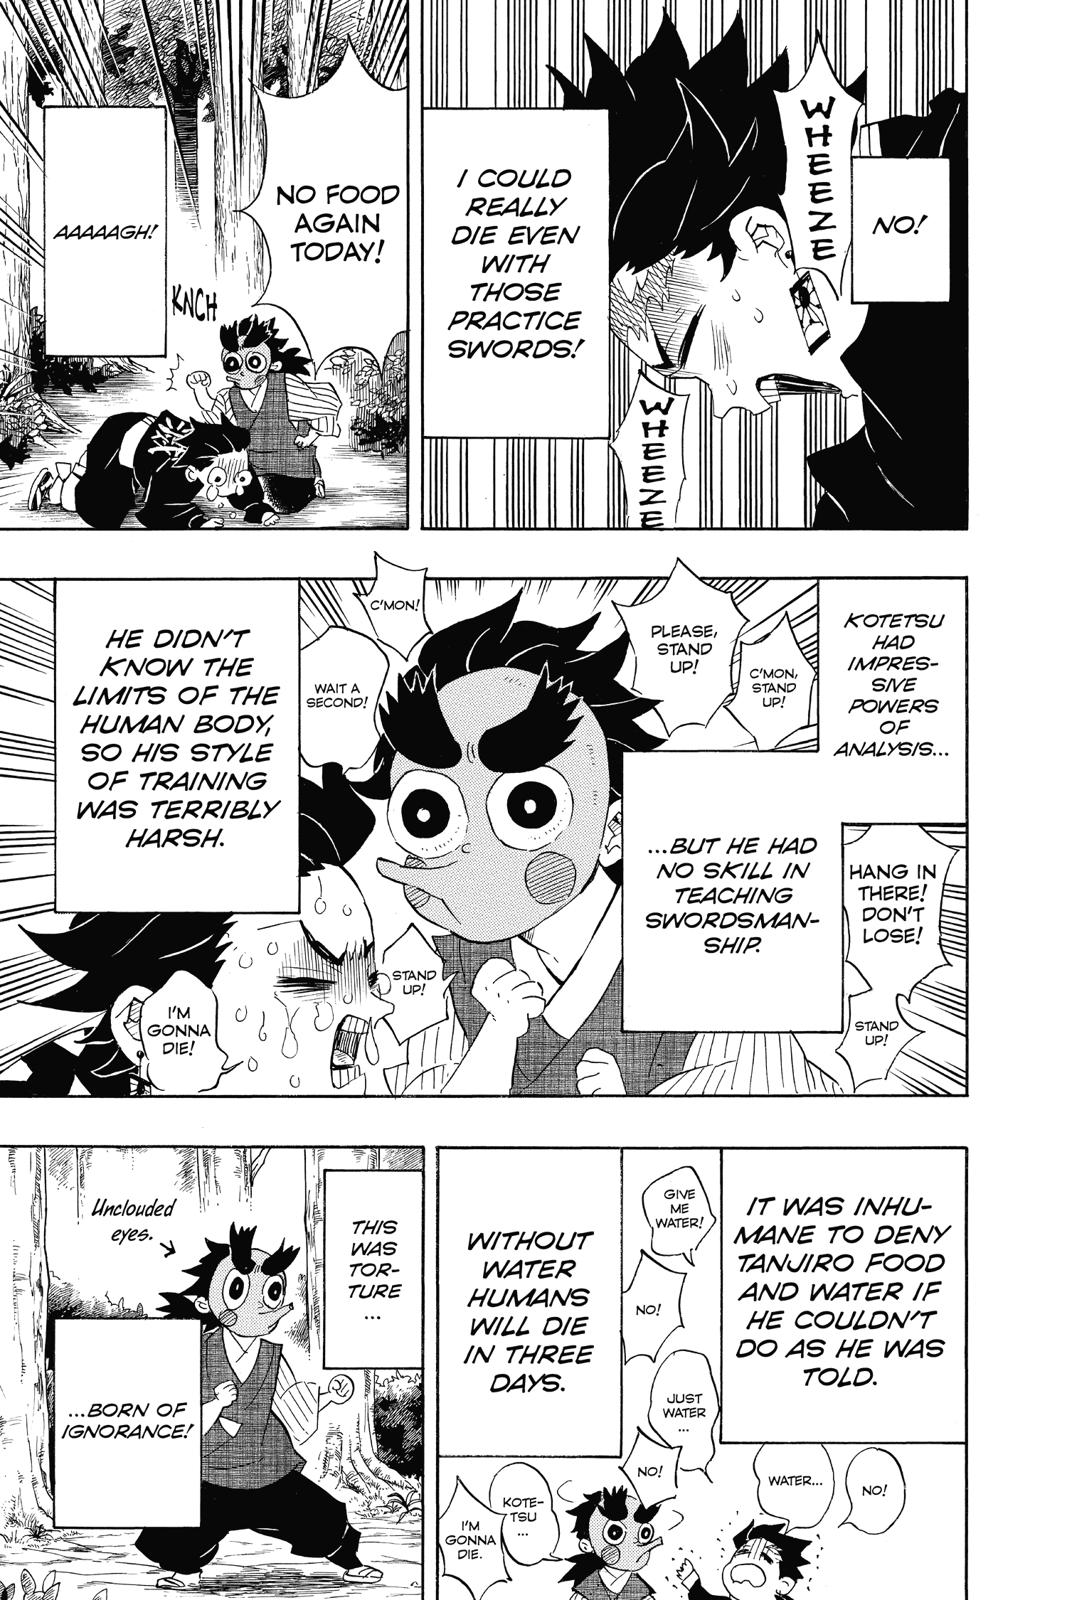 Demon Slayer Manga Manga Chapter - 104 - image 4